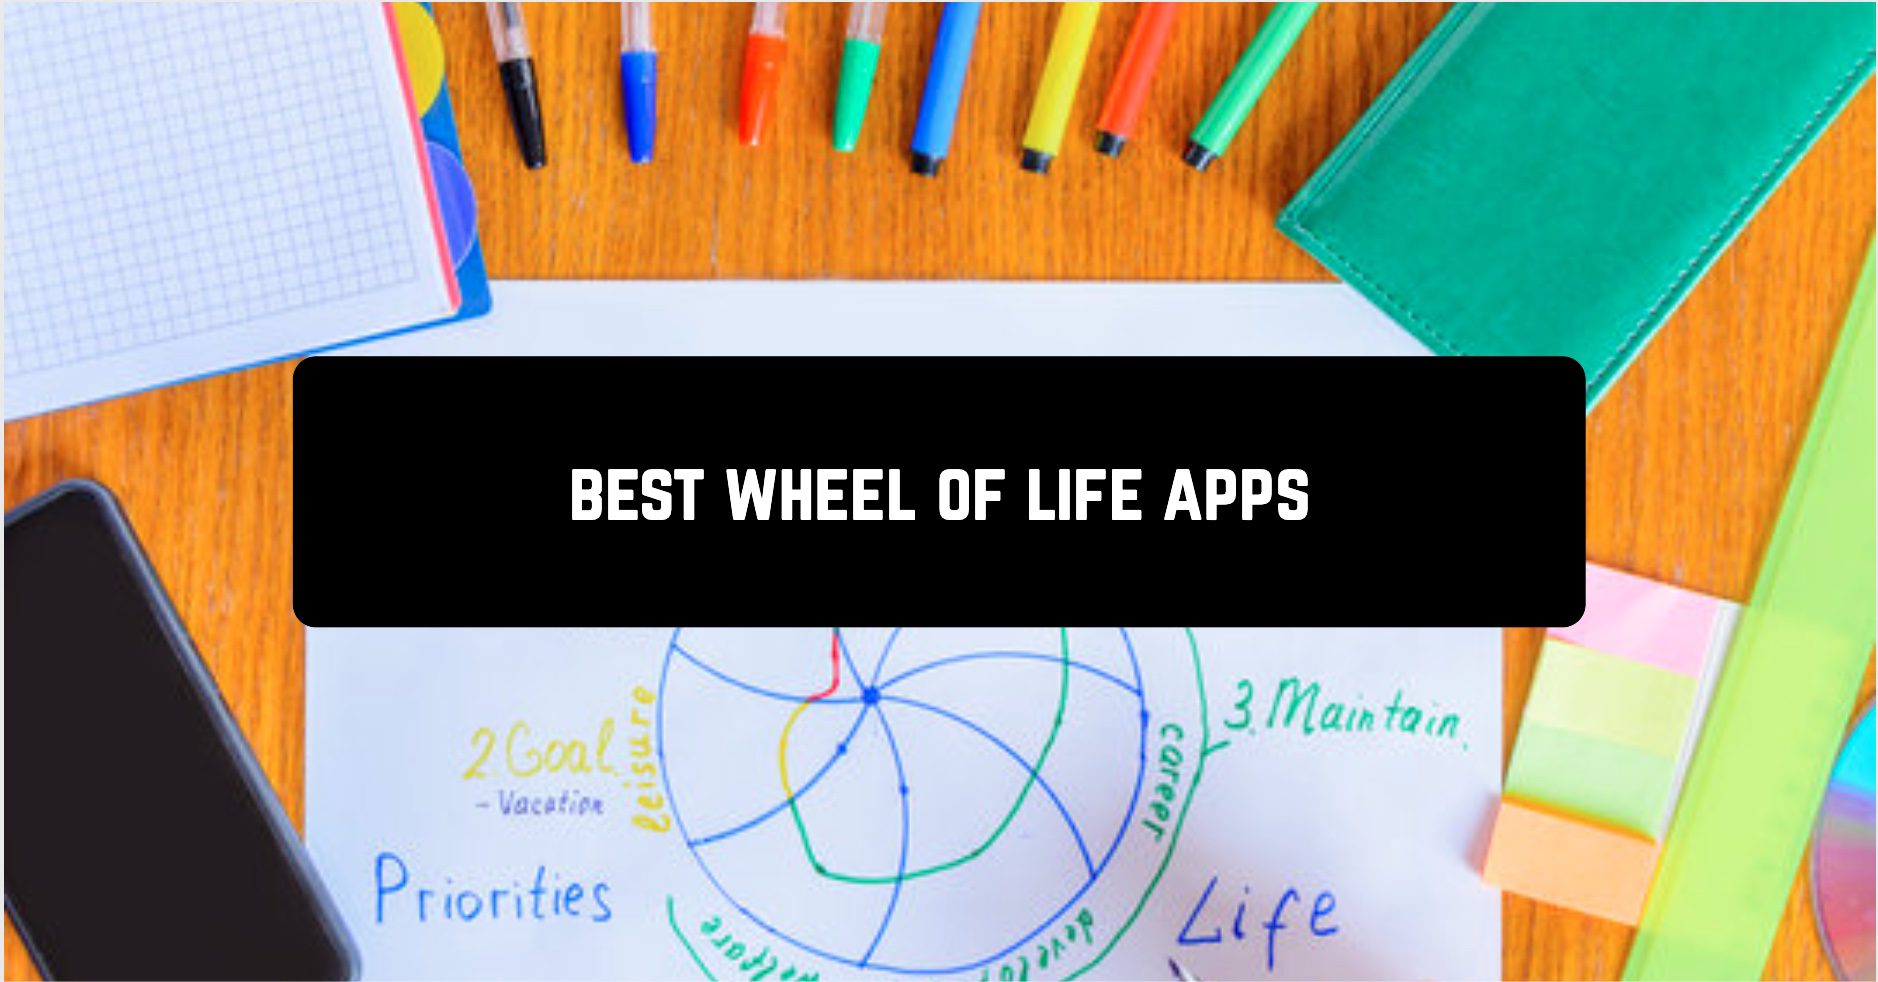 Best wheel of life apps